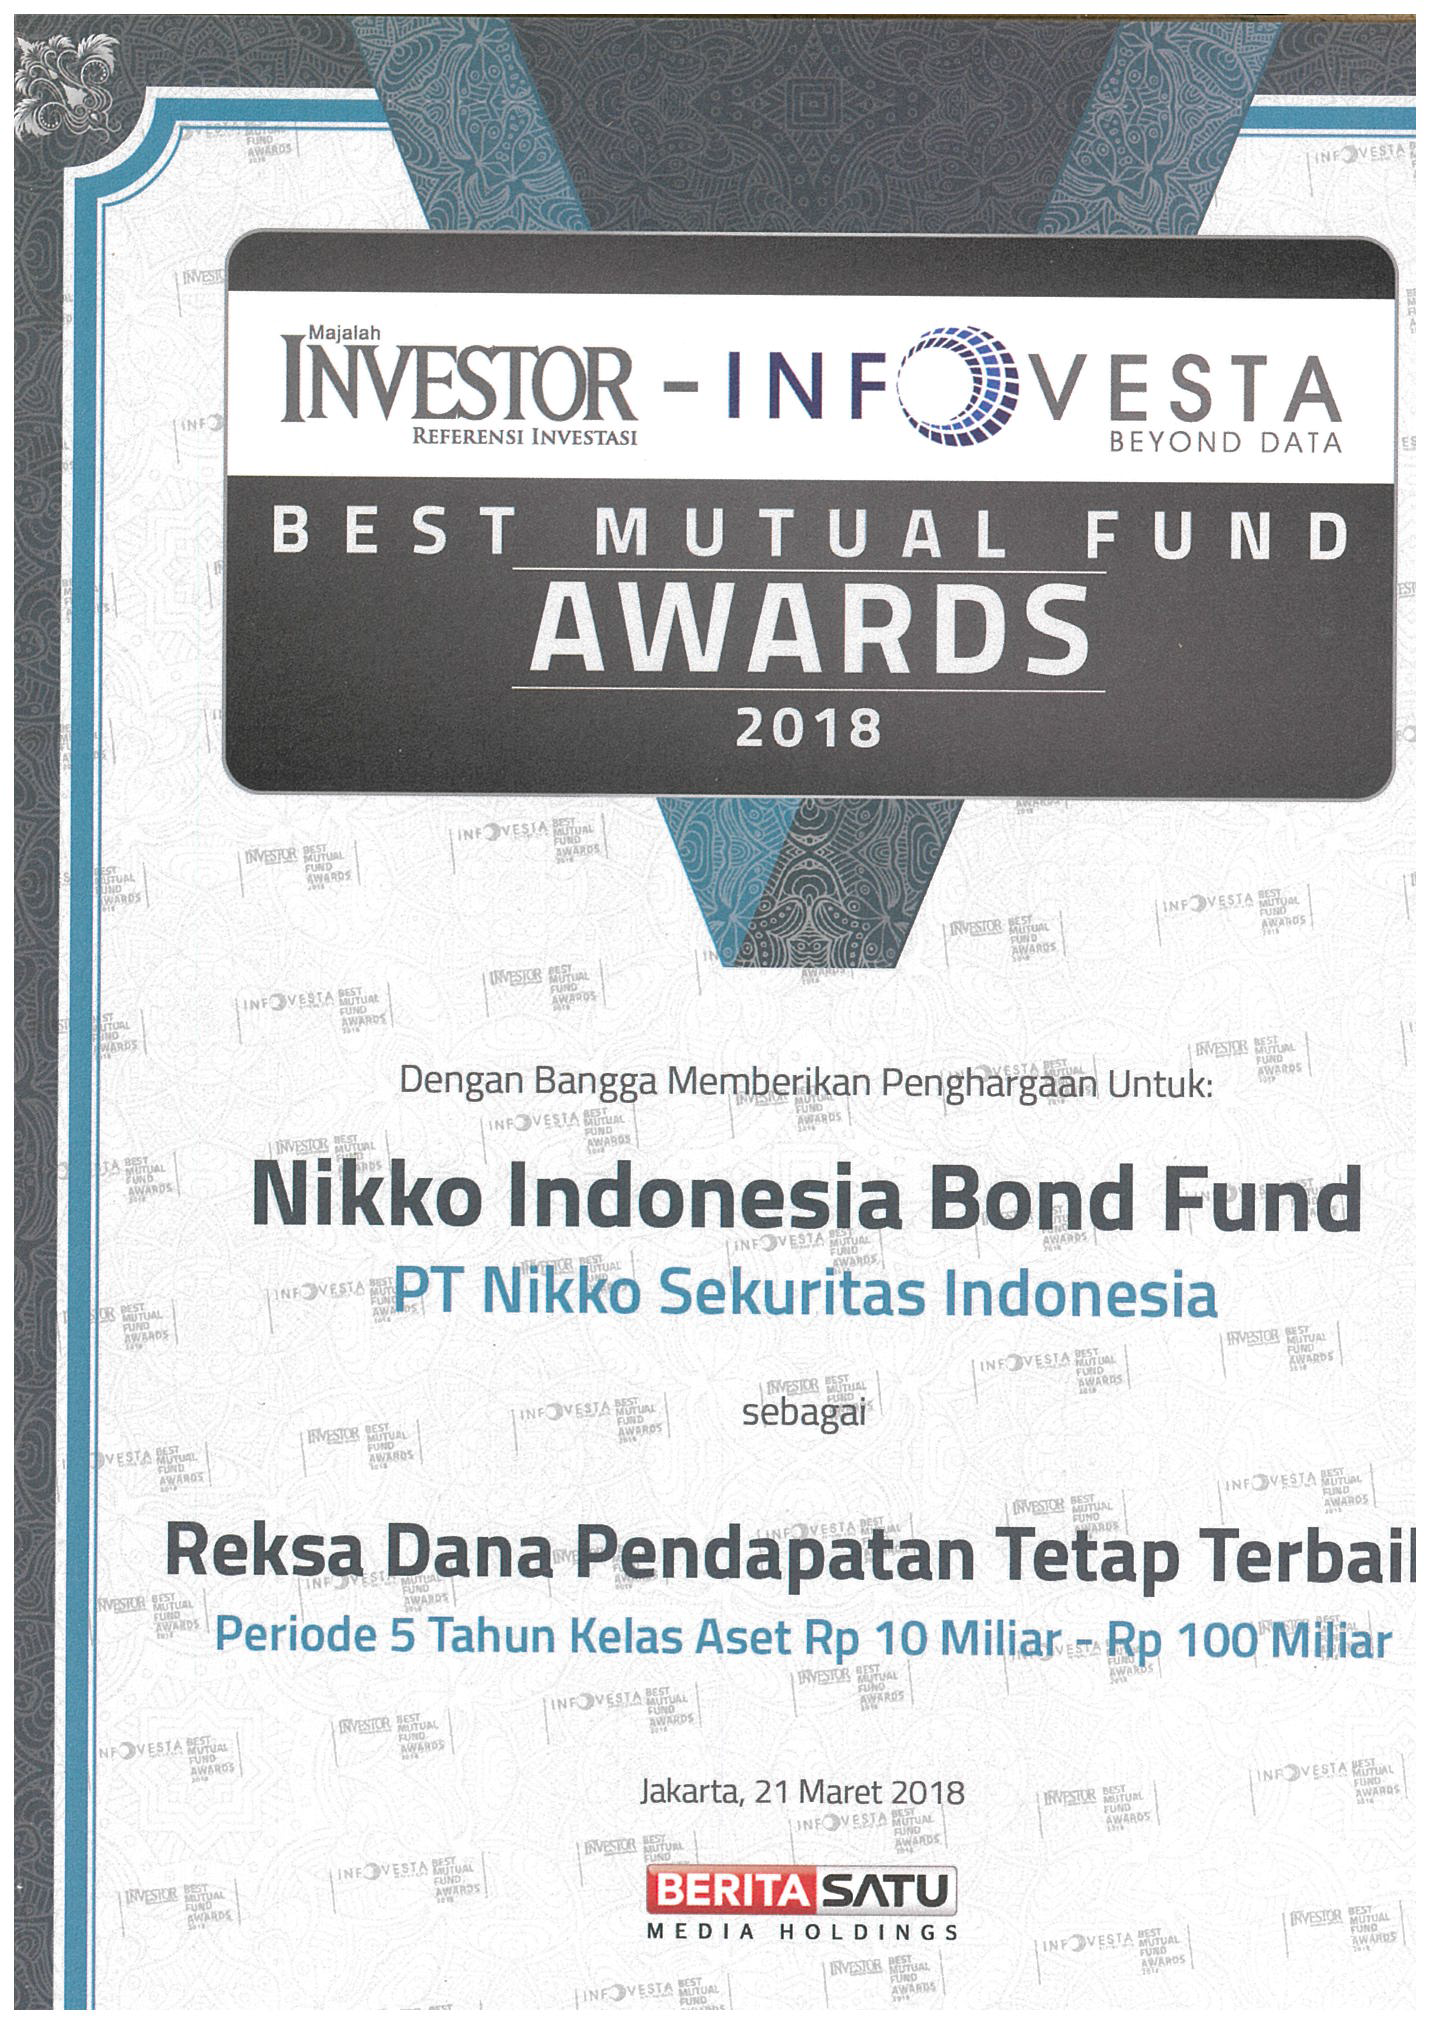 Penghargaan Reksa Dana Best Mutual Fund Awards 2018 Reksa Dana Pendapatan Tetap Terbaik